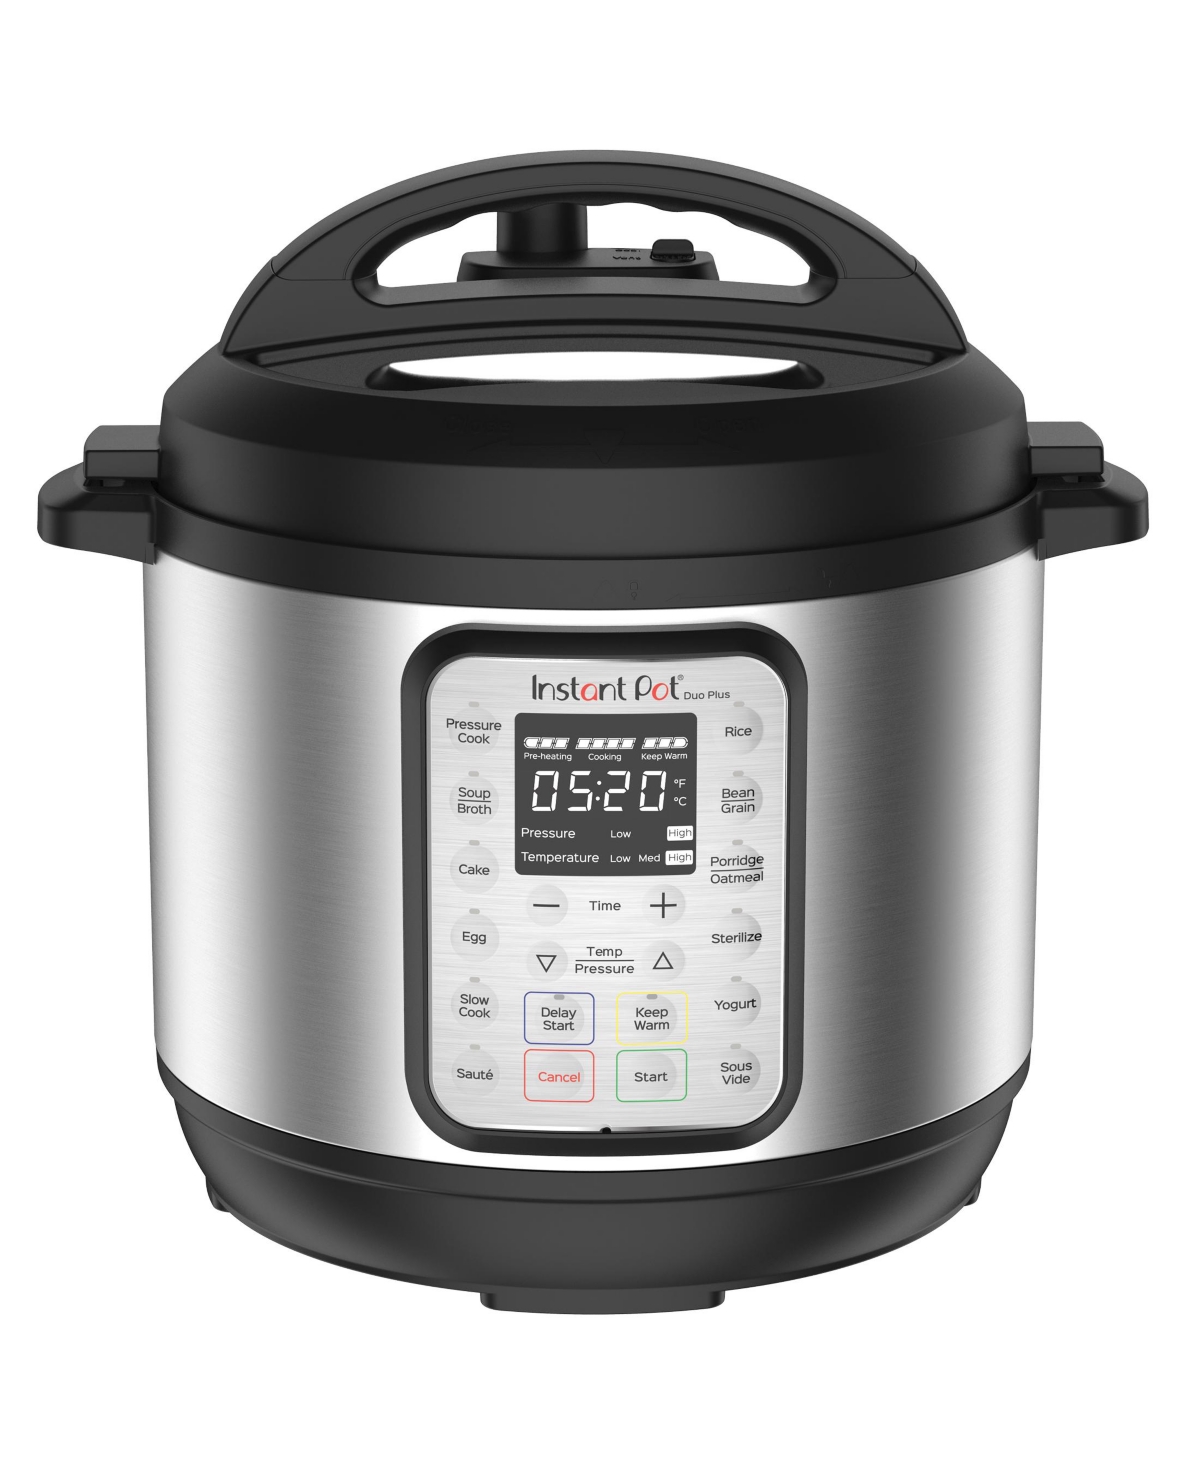 Instant Pot Duo 80 V5 8 qt. Pressure Cooker Lid